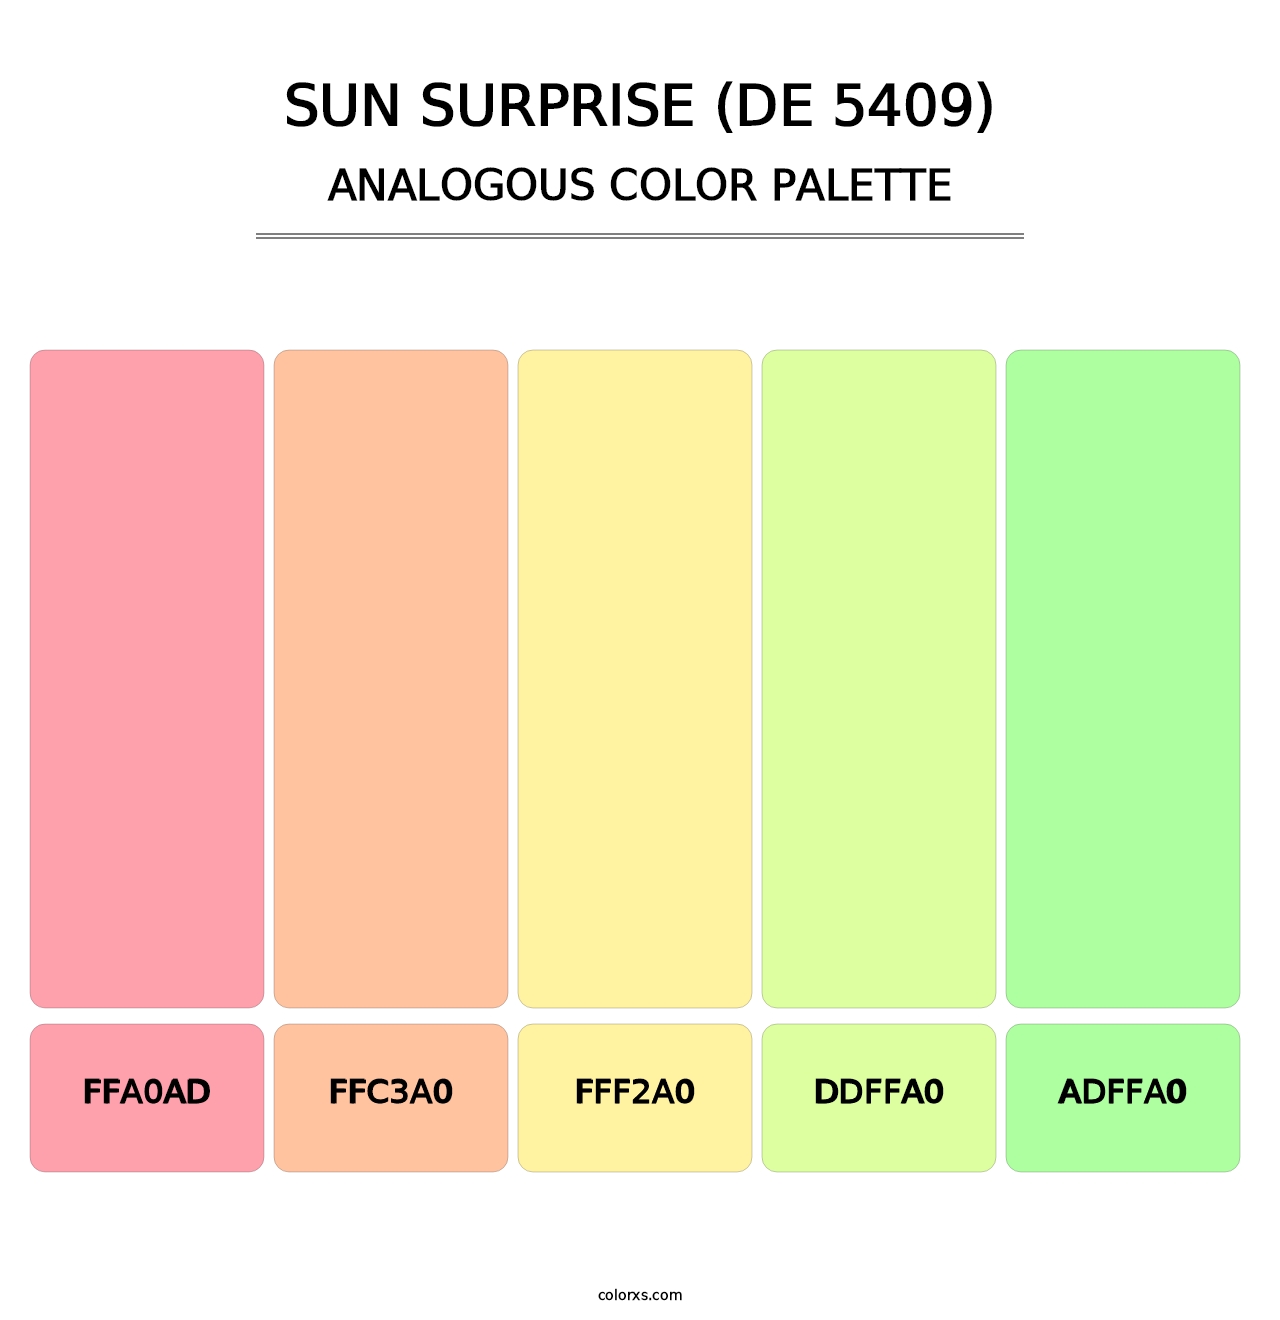 Sun Surprise (DE 5409) - Analogous Color Palette